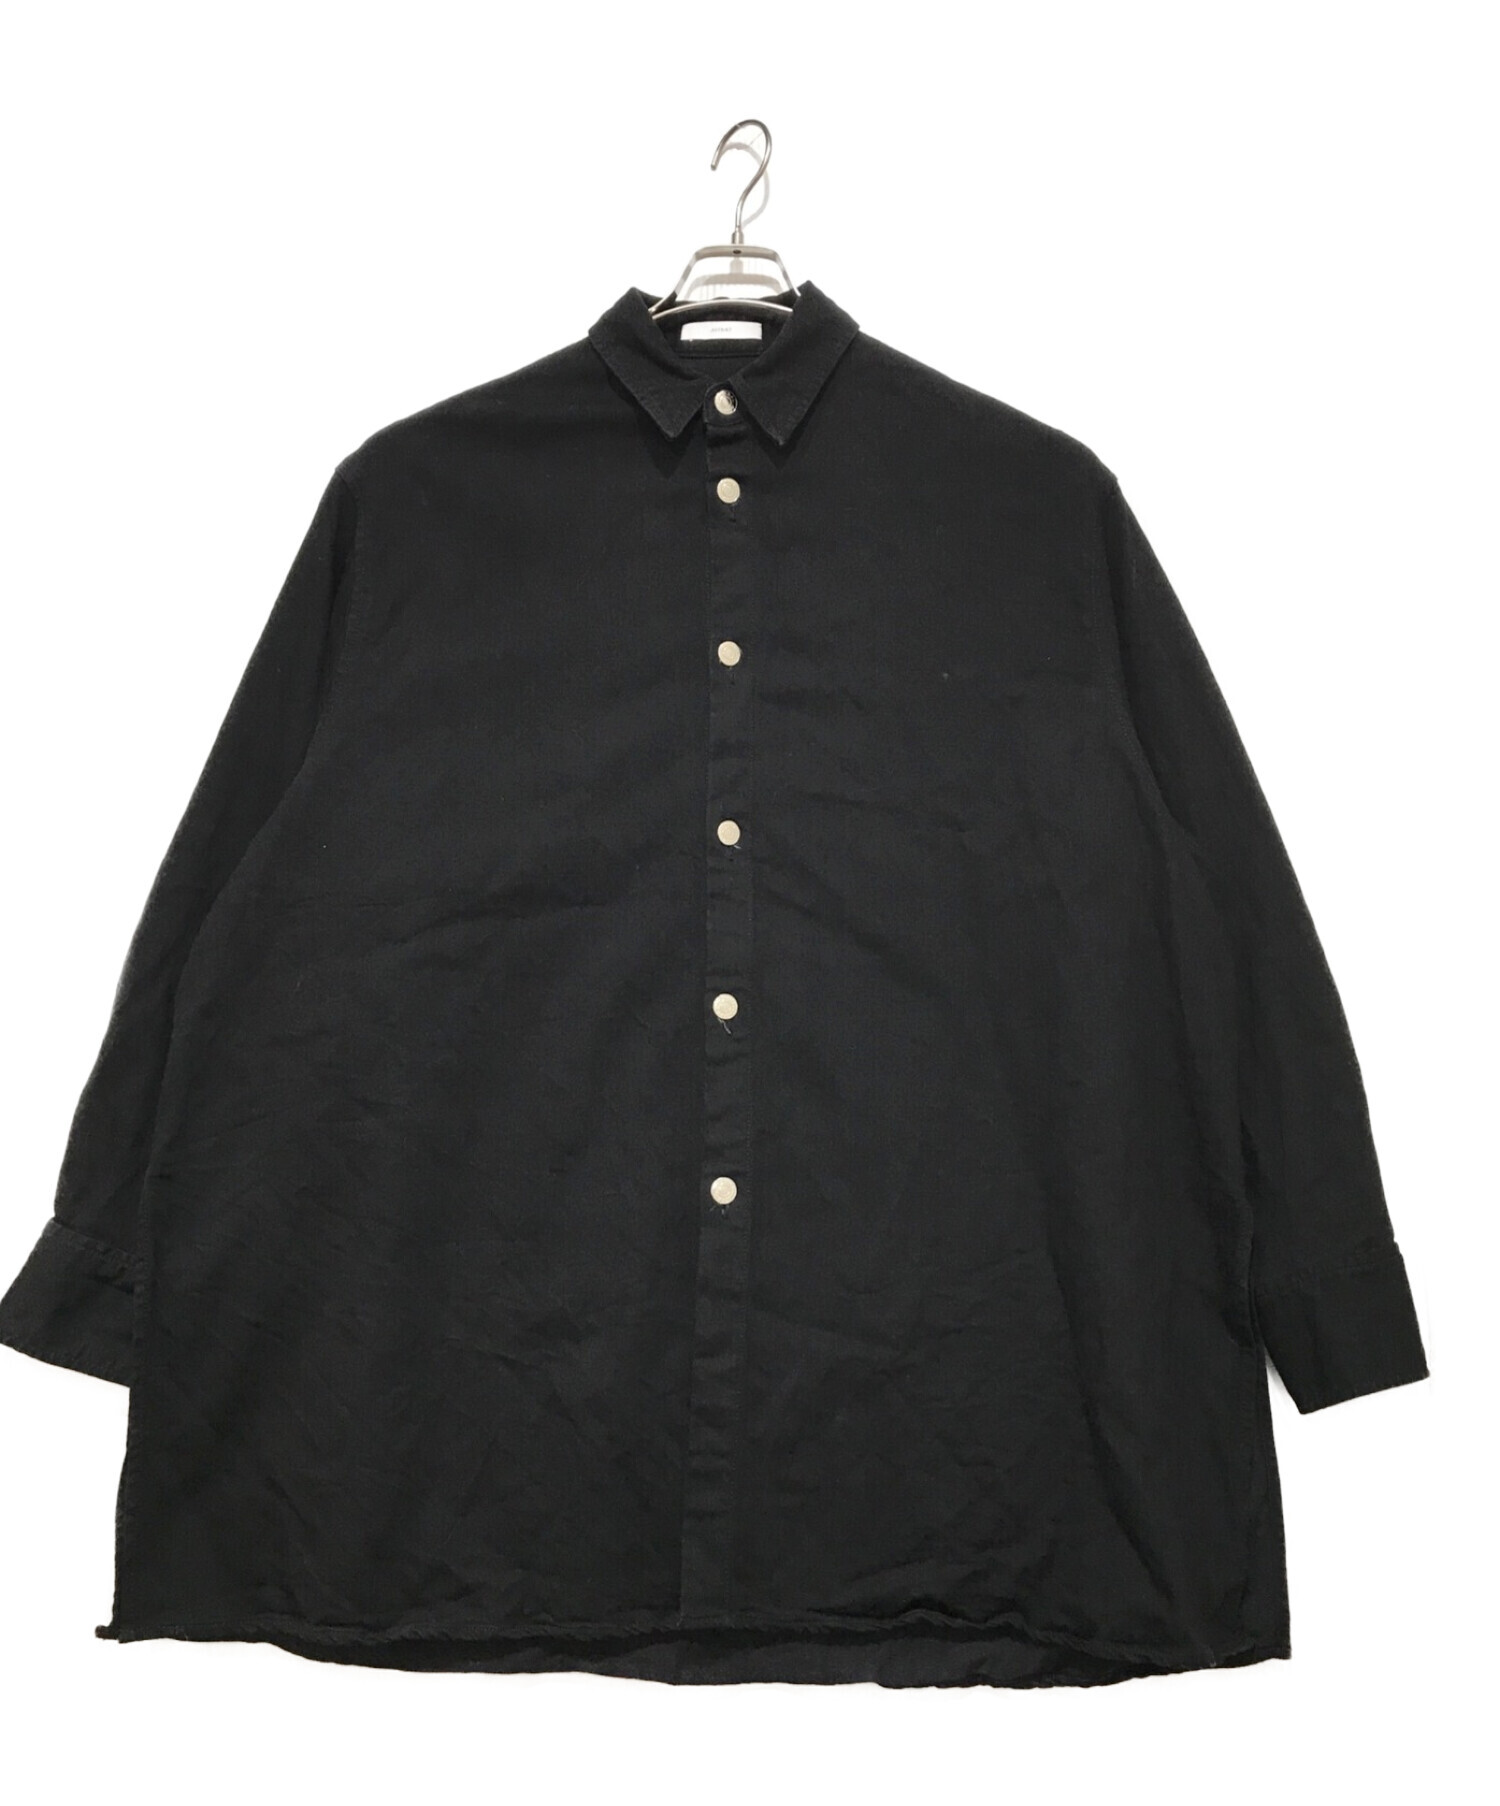 ASTRAET (アストラット) ビッグデニムシャツ ブラック サイズ:なし(実寸サイズをご確認下さい)